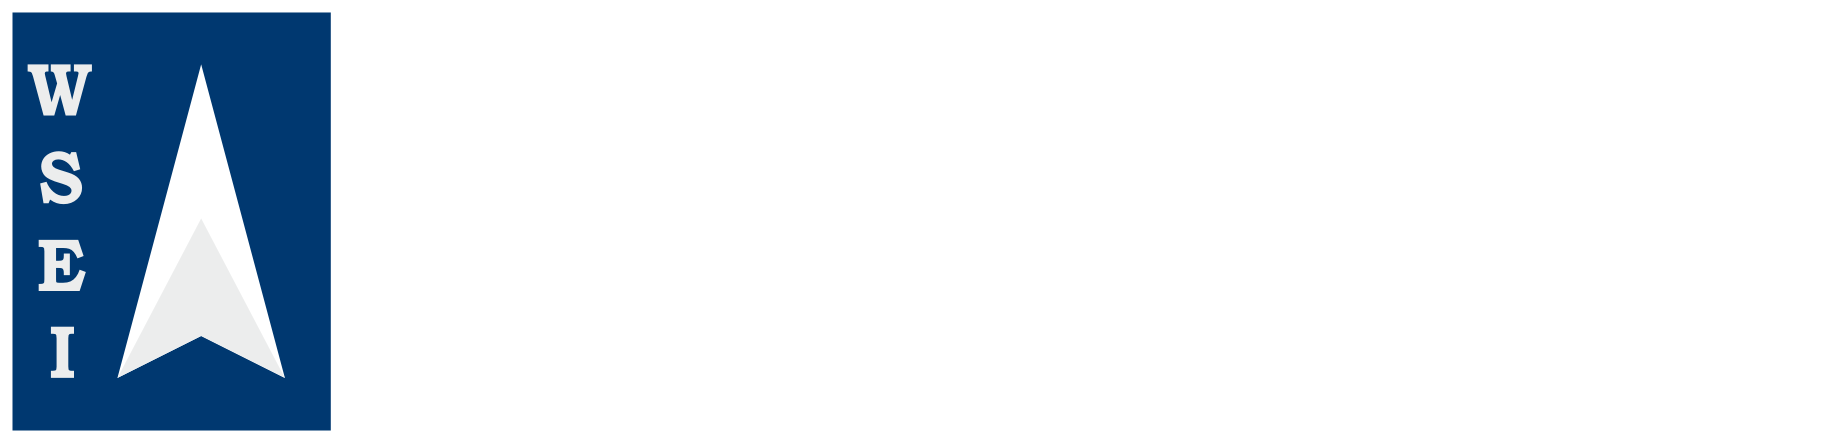 wsei-logo-1